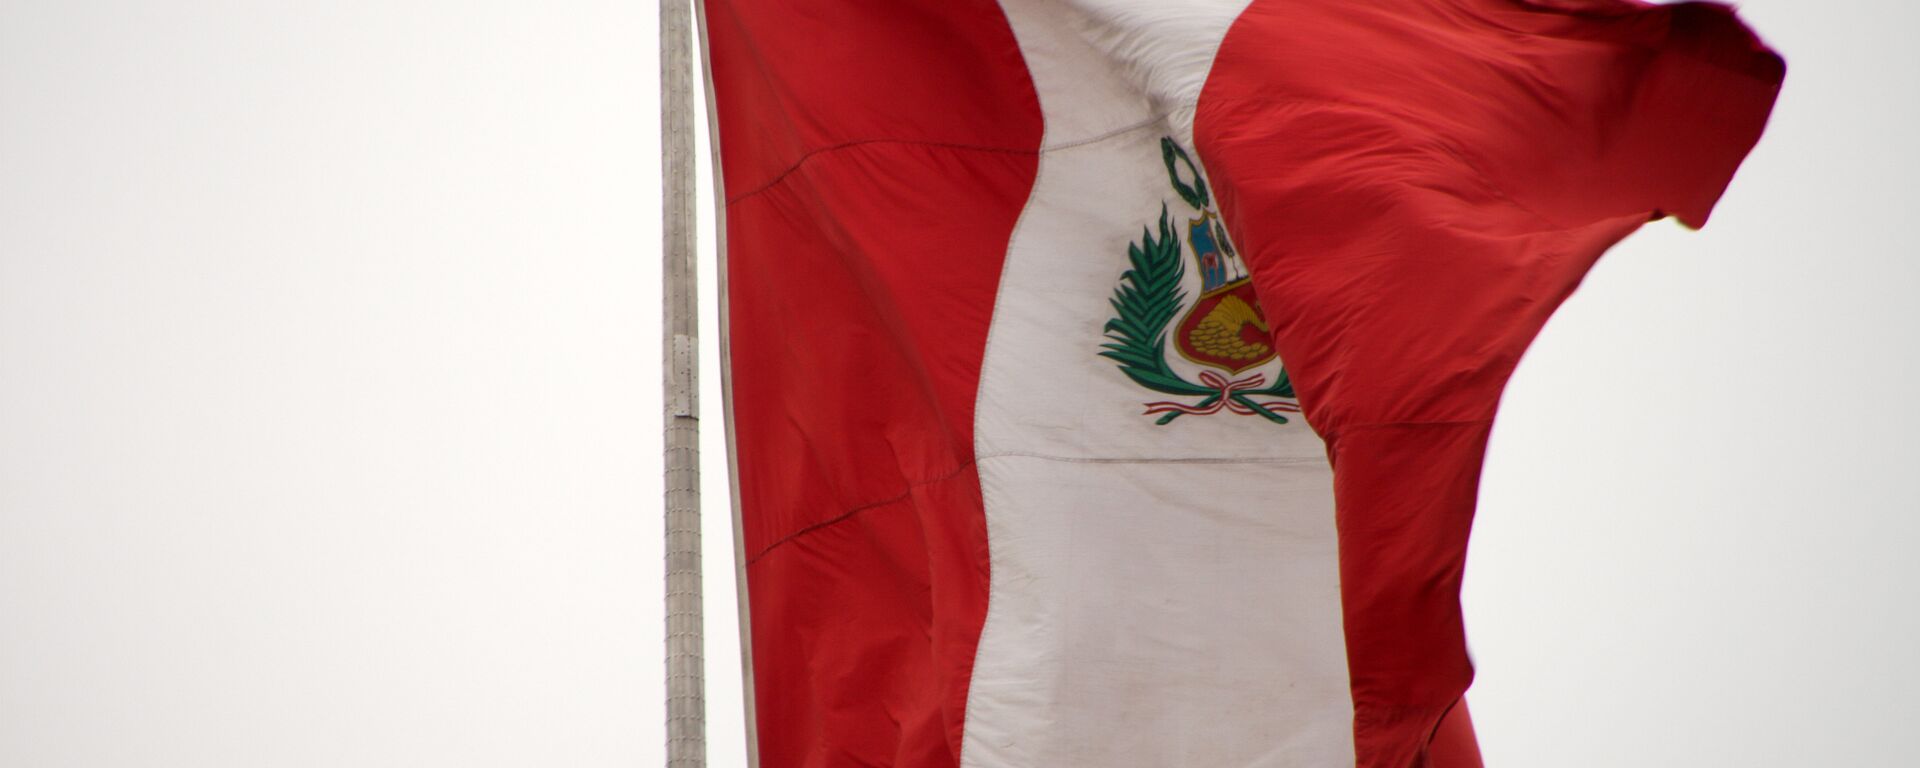 La bandera de Perú - Sputnik Mundo, 1920, 01.10.2021